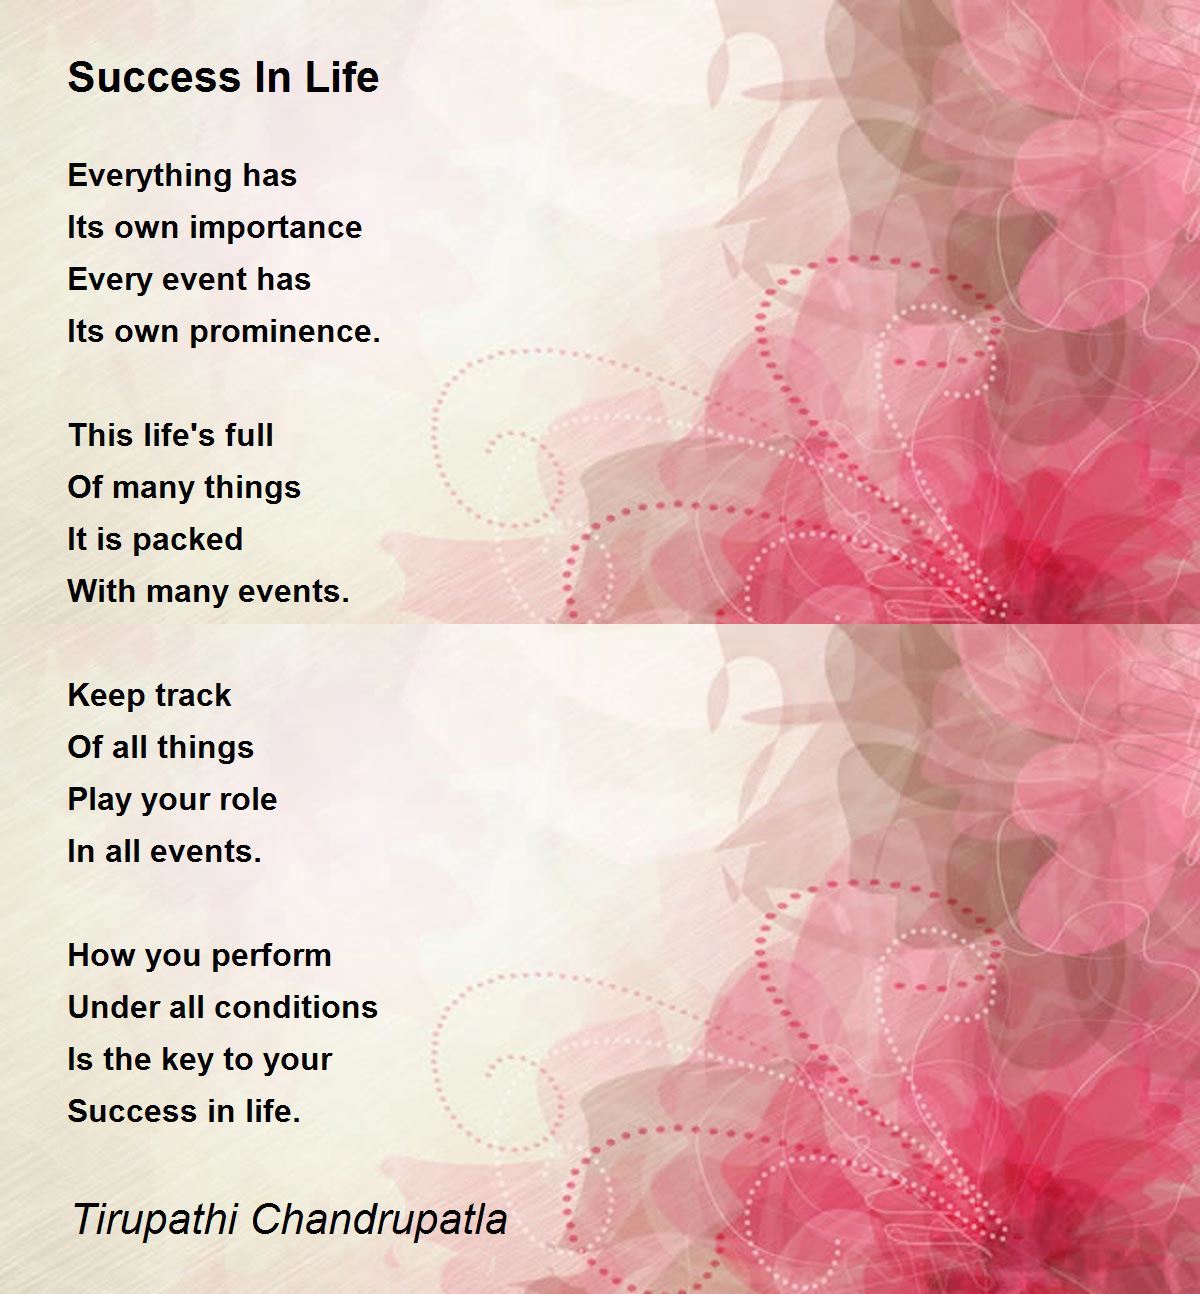 Success In Life - Success In Life Poem by Tirupathi Chandrupatla